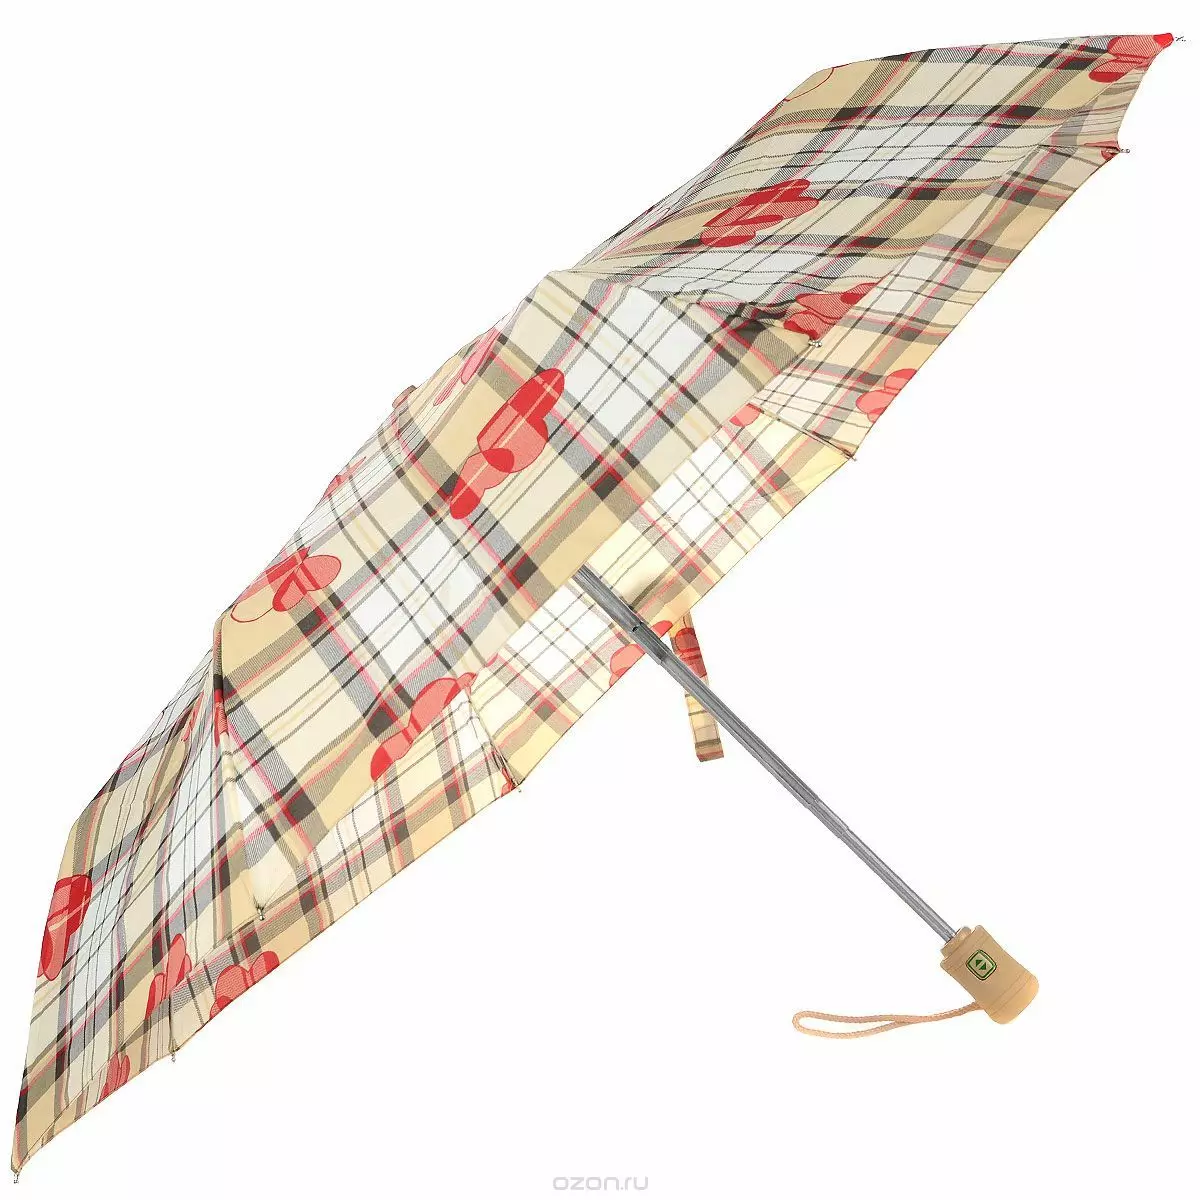 المظلات FULTON (53 صور): ملامح النماذج والآراء حول المظلات 15229_30